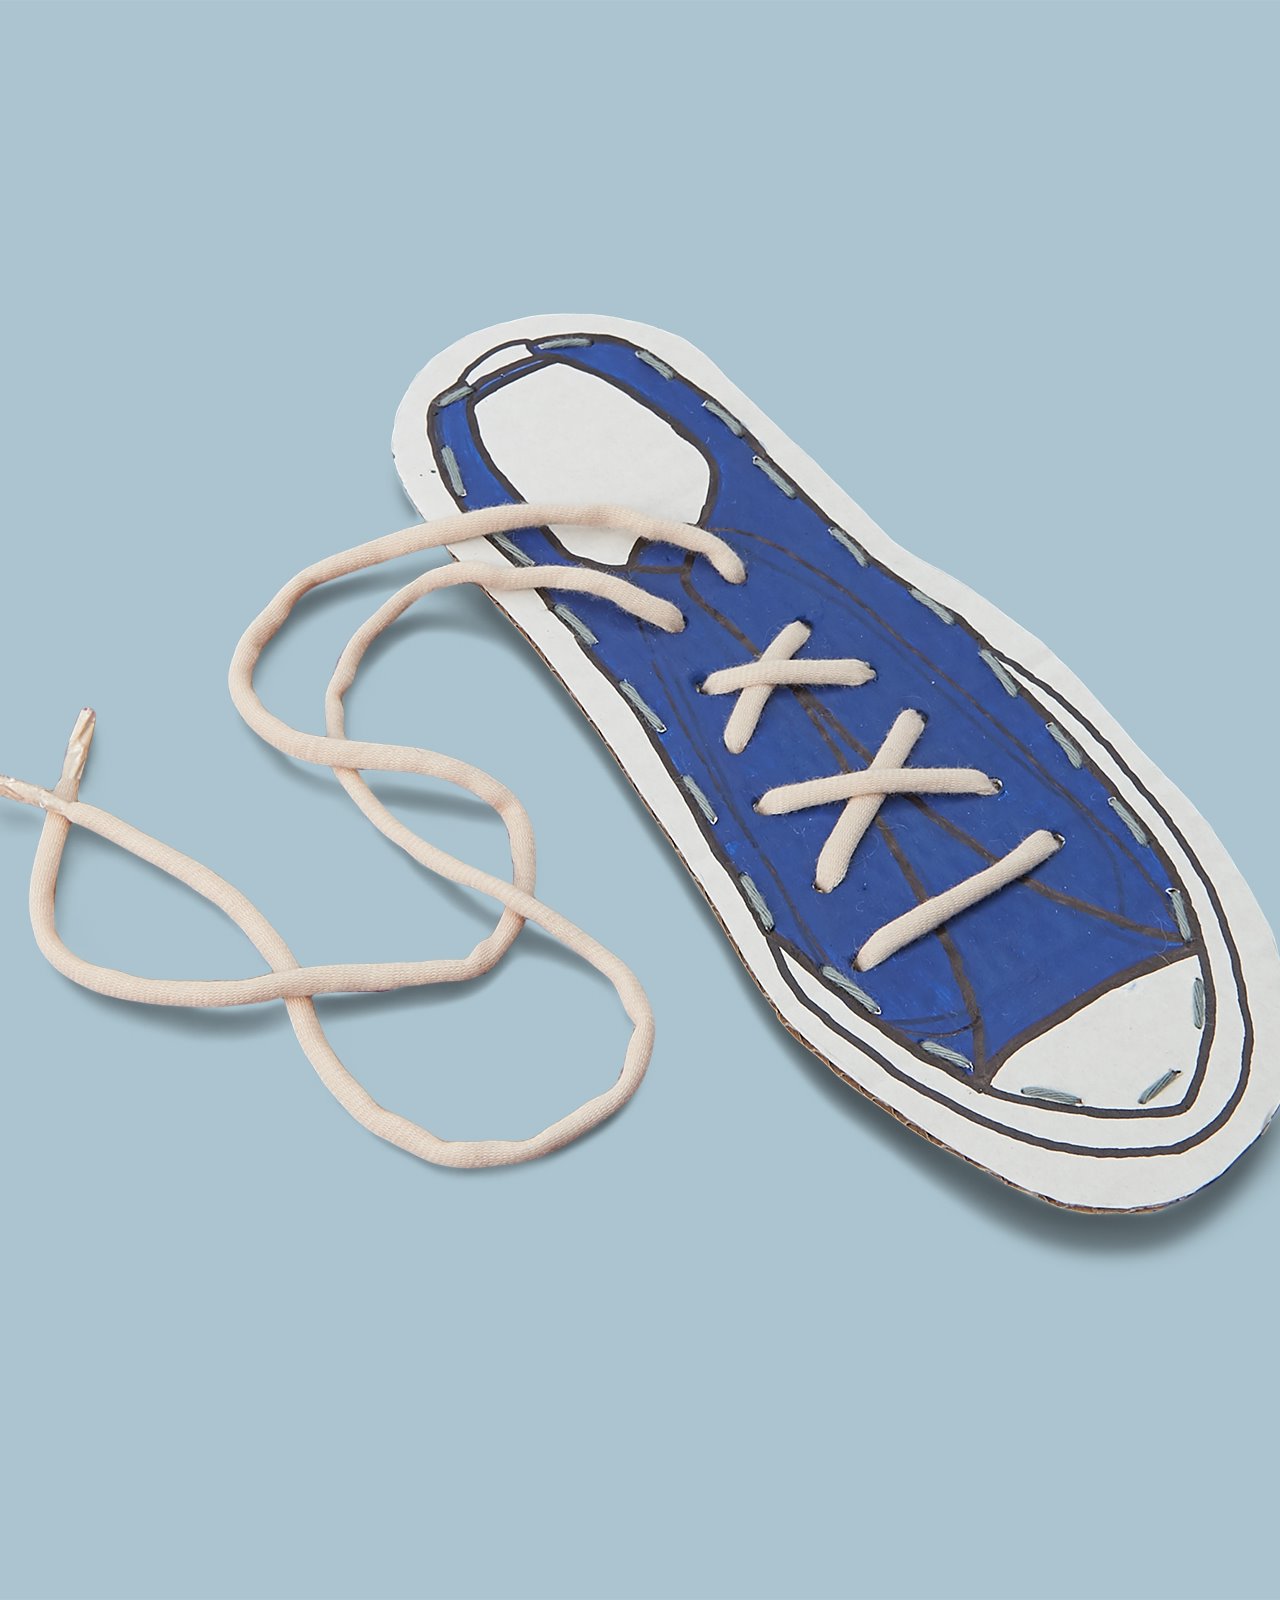 Lær at binde snørebånd DIY8027_upcycle_shoe-image.jpg